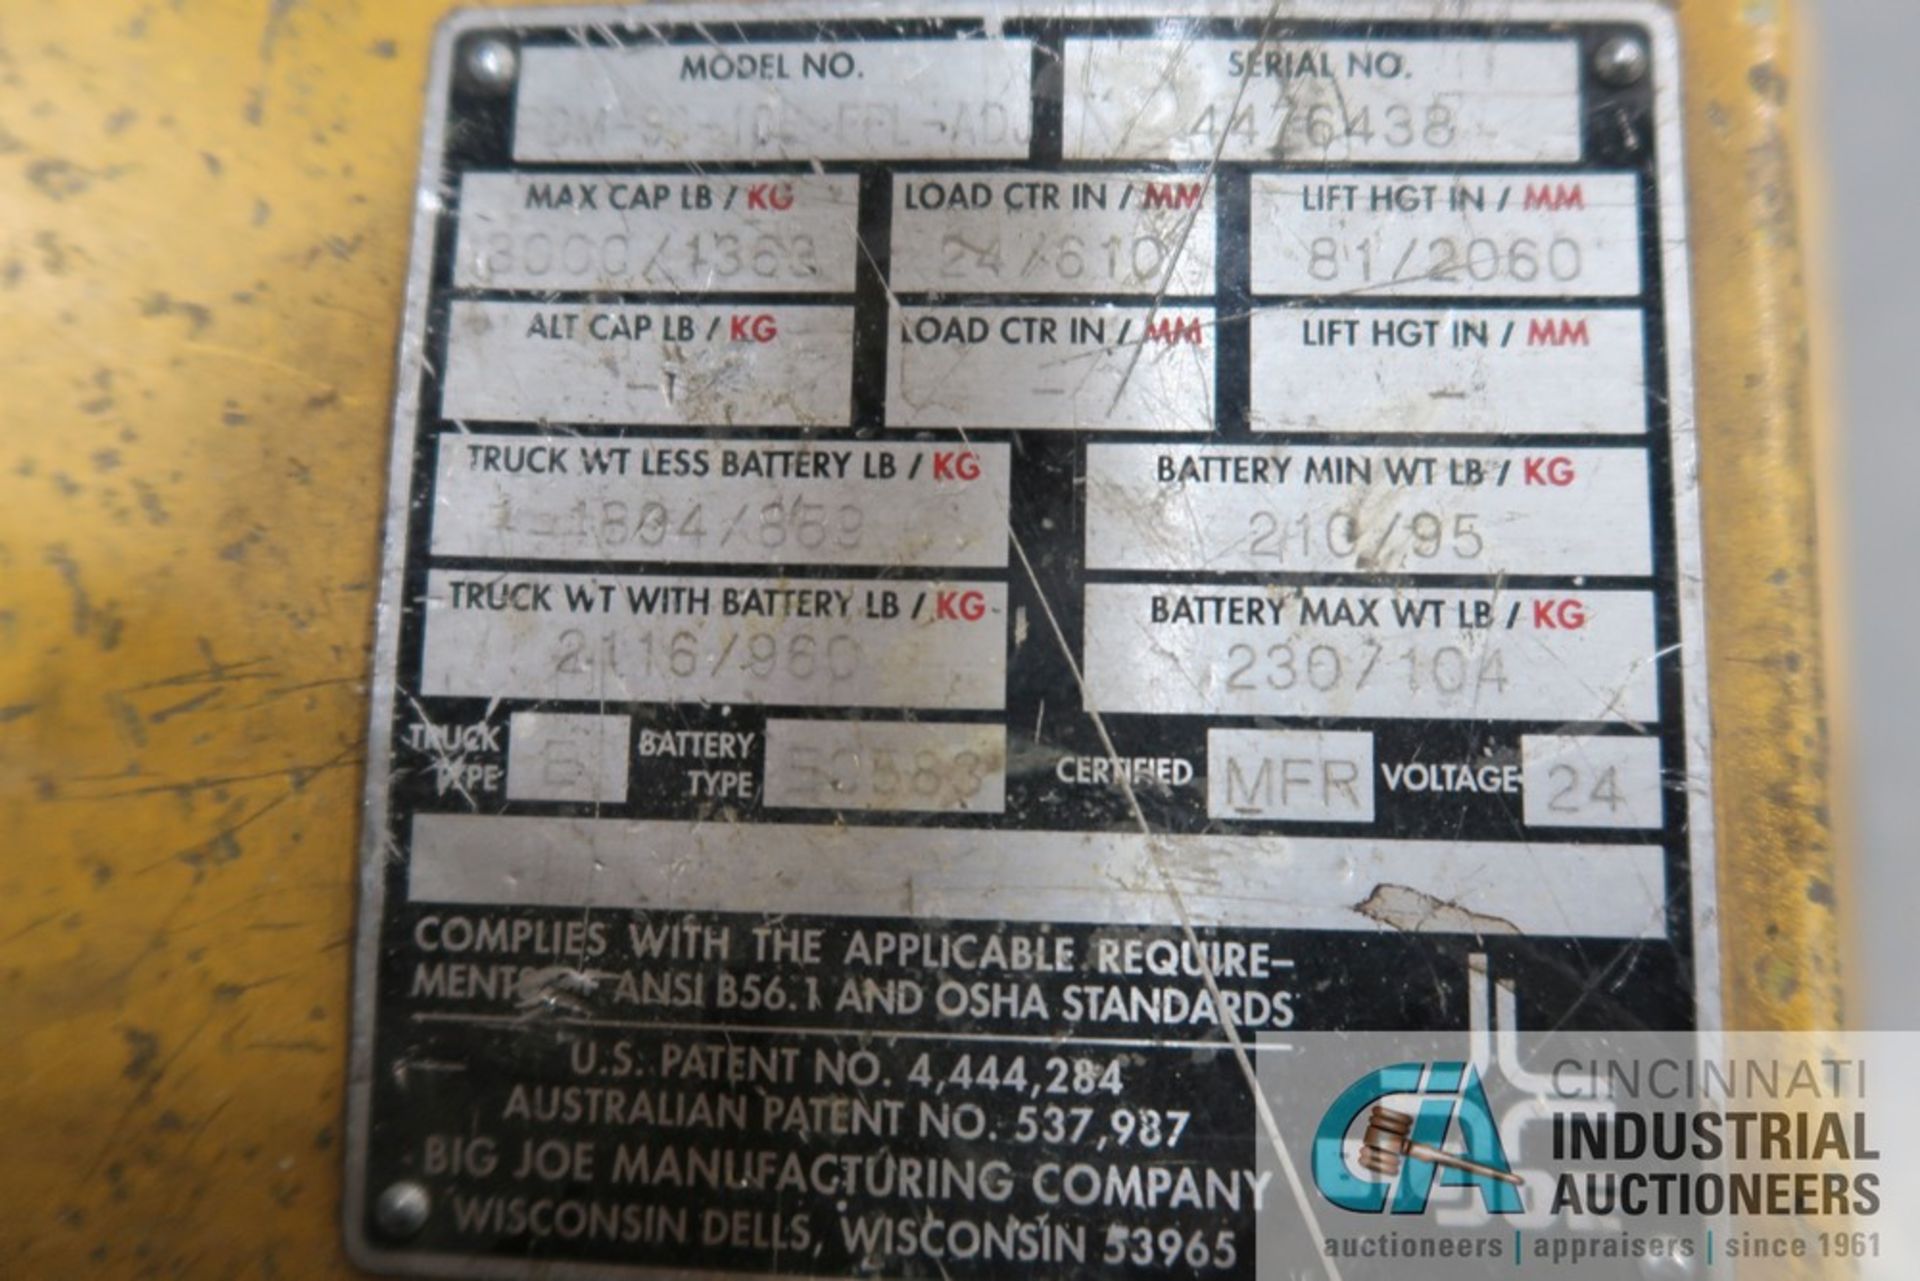 3,000 LB BIG JOE MODEL / MAX STACKER MODEL RDM-90-106-FFL-ADJ 24 VOLT WALK-BEHIND ELECTRIC PALLET - Image 5 of 5